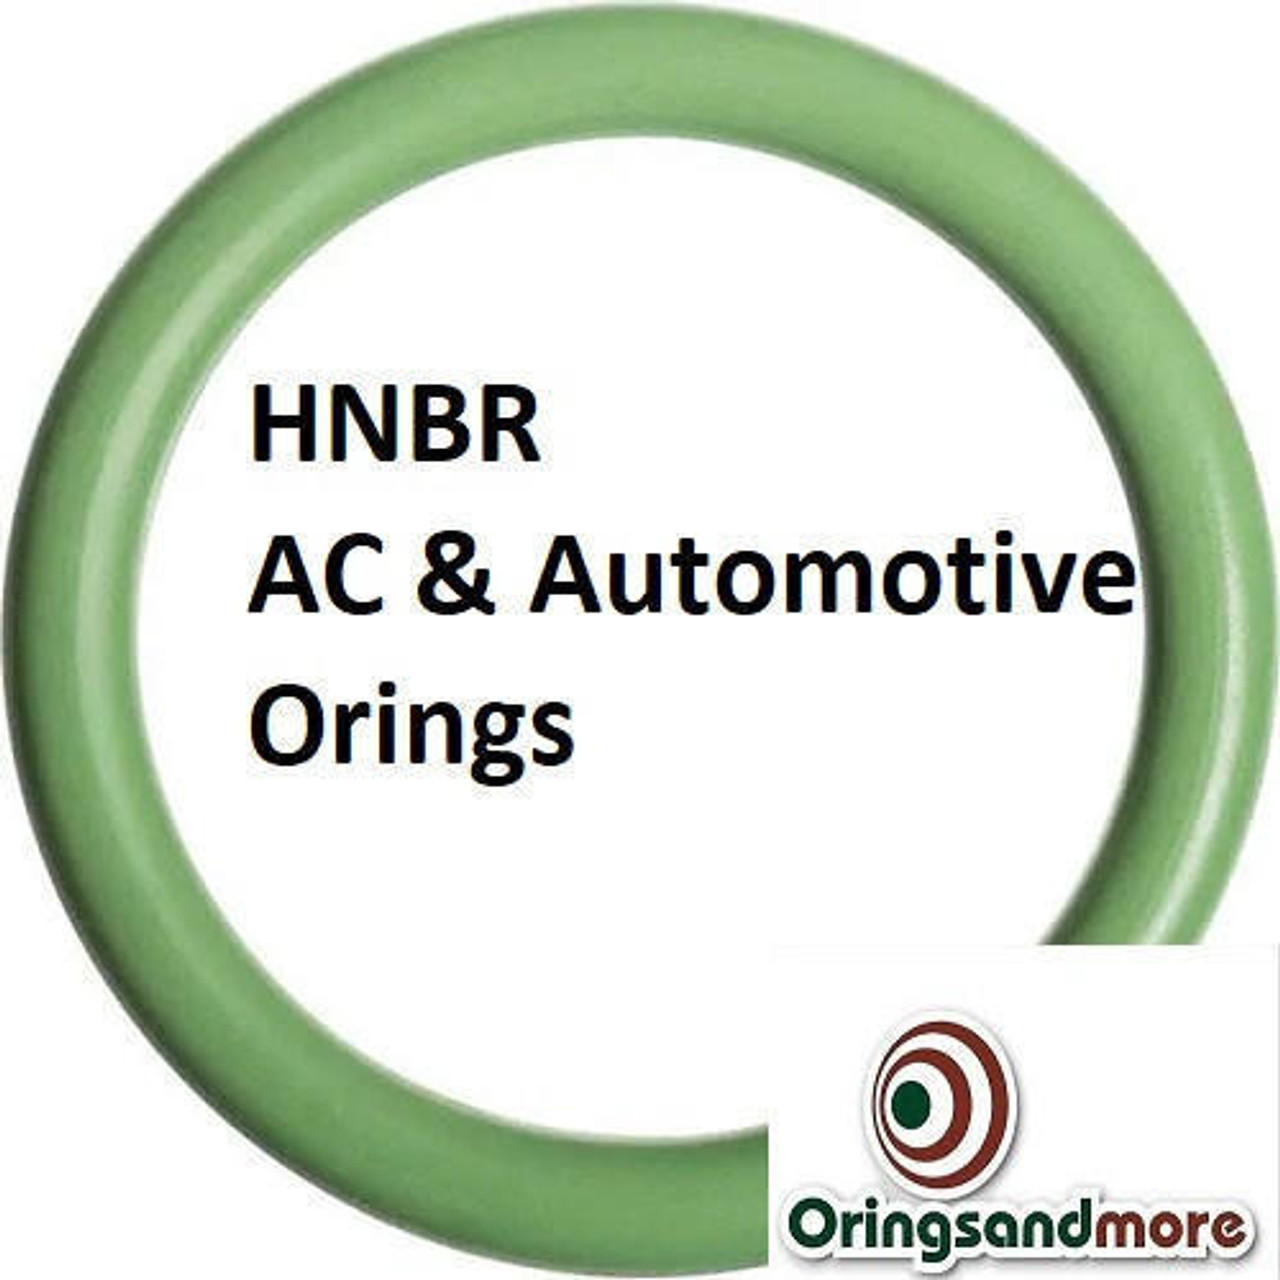 HNBR Orings  # 120-70D Green Minimum 10 pcs